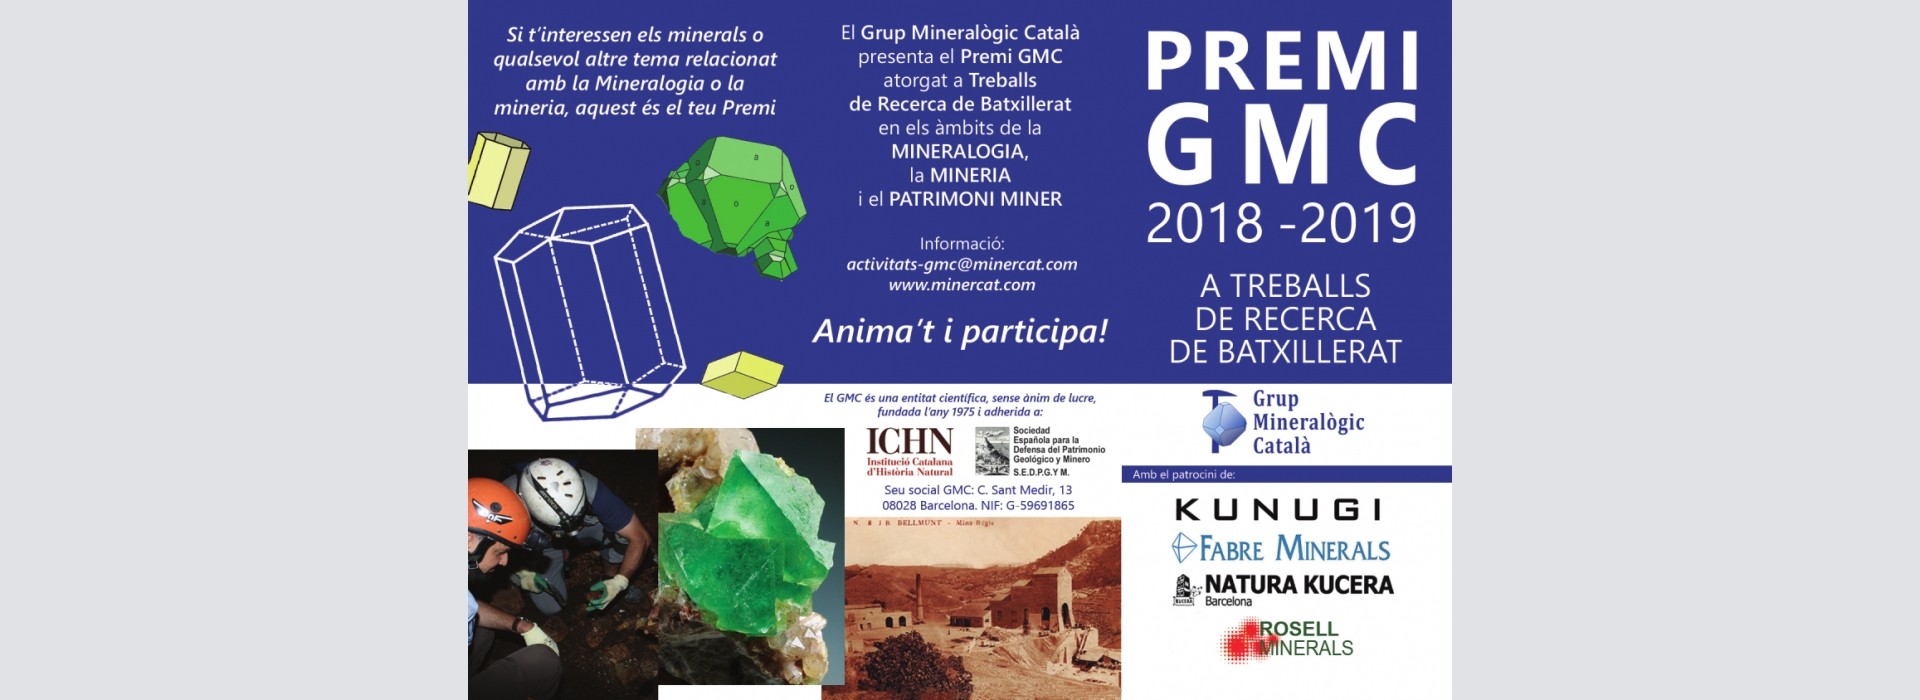 Premi GMC 2018-2019 a treballs de recerca de batxillerat